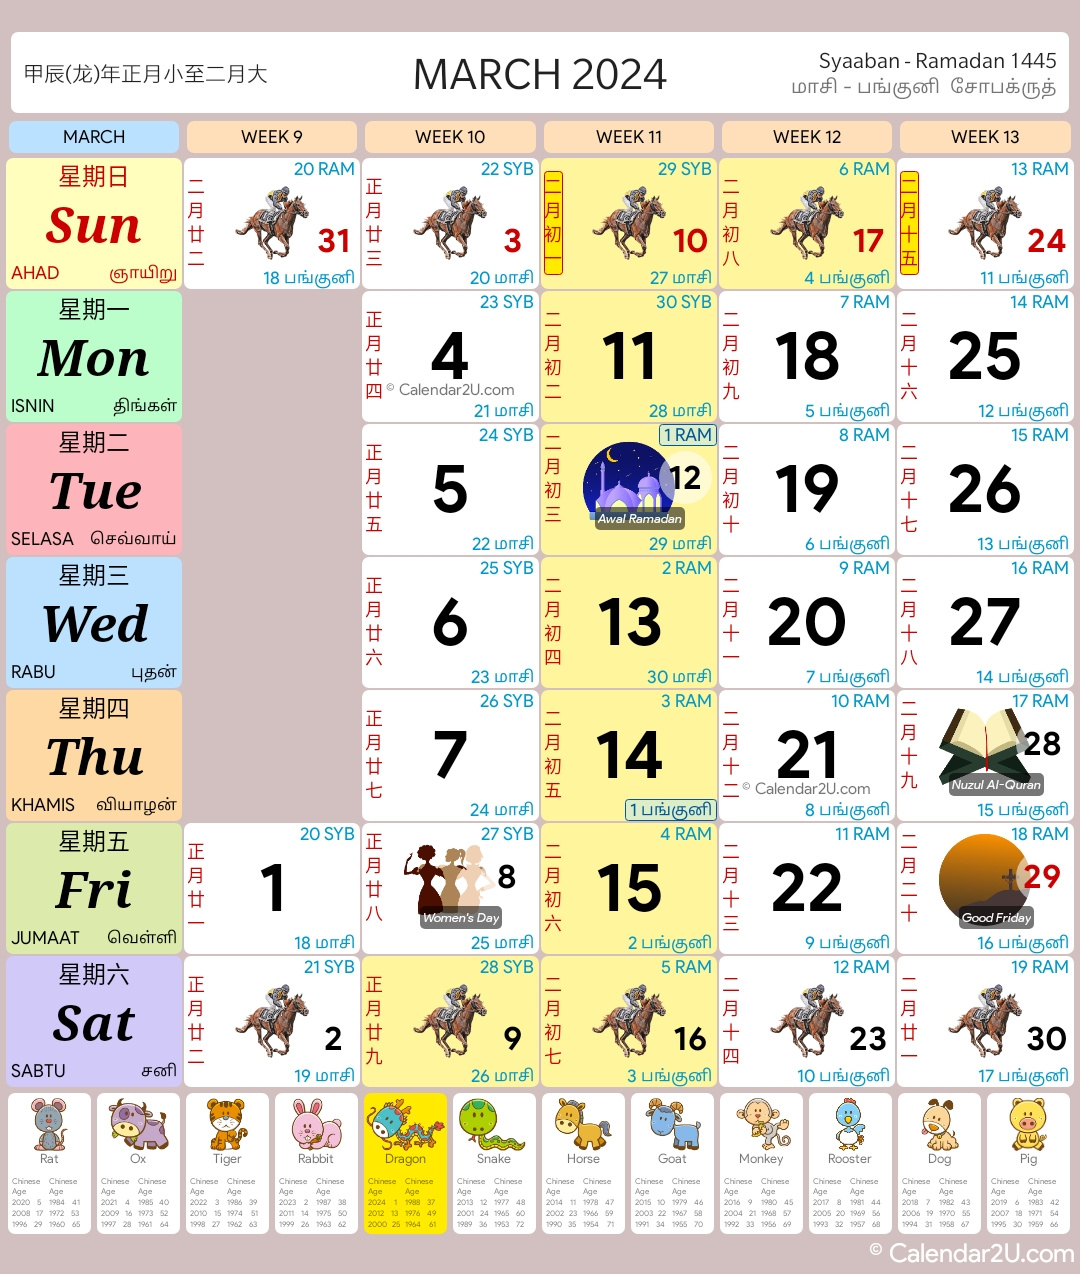 Singapore Calendar Year 2024 - Singapore Calendar for Free Printable Calendar 2024 With Singapore Holidays